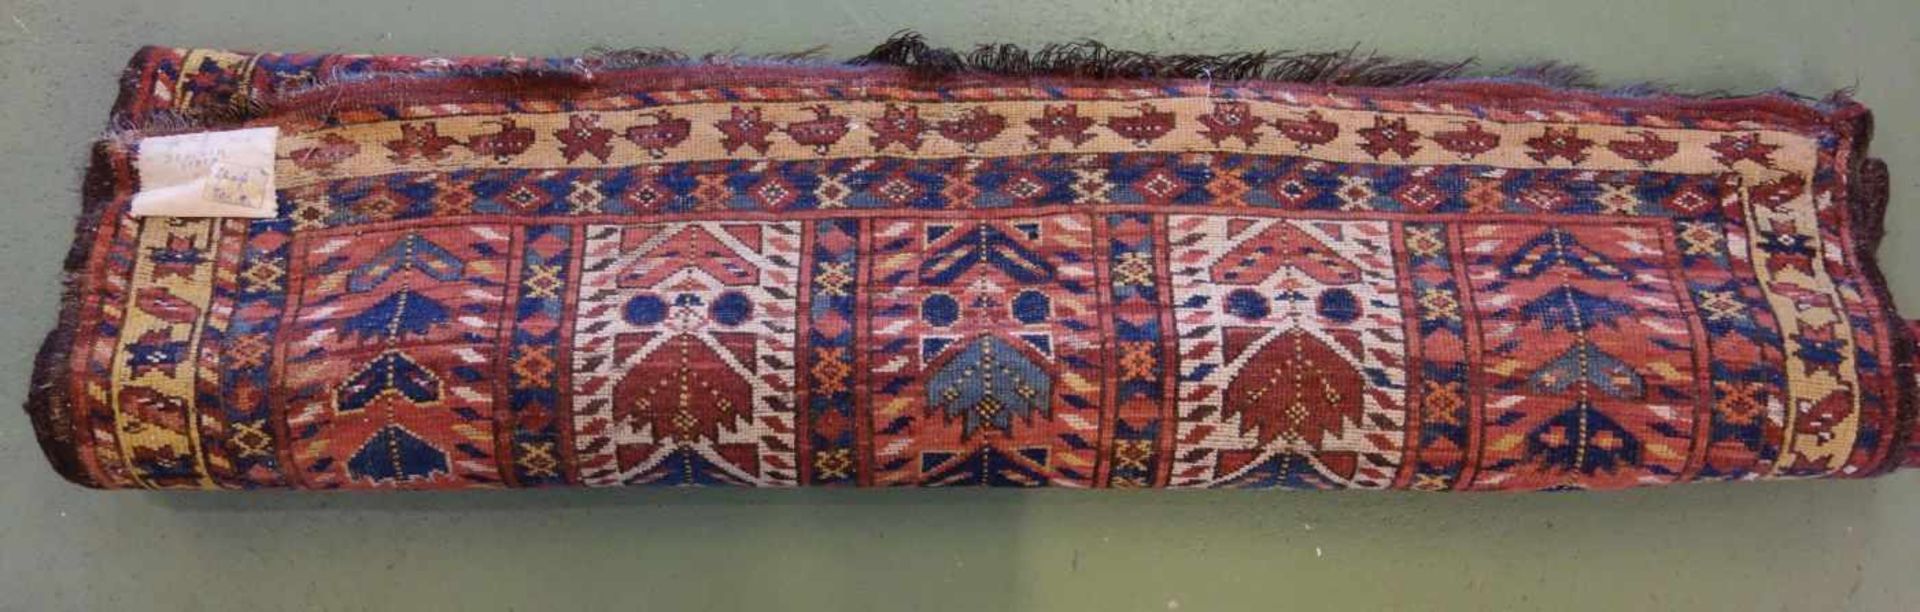 SCHMALER BESCHIR GEBETSTEPPICH / prayer rug, wohl 2. H. 19. Jh., Turkmenistan / Ersari-Beschir ( - Image 17 of 24